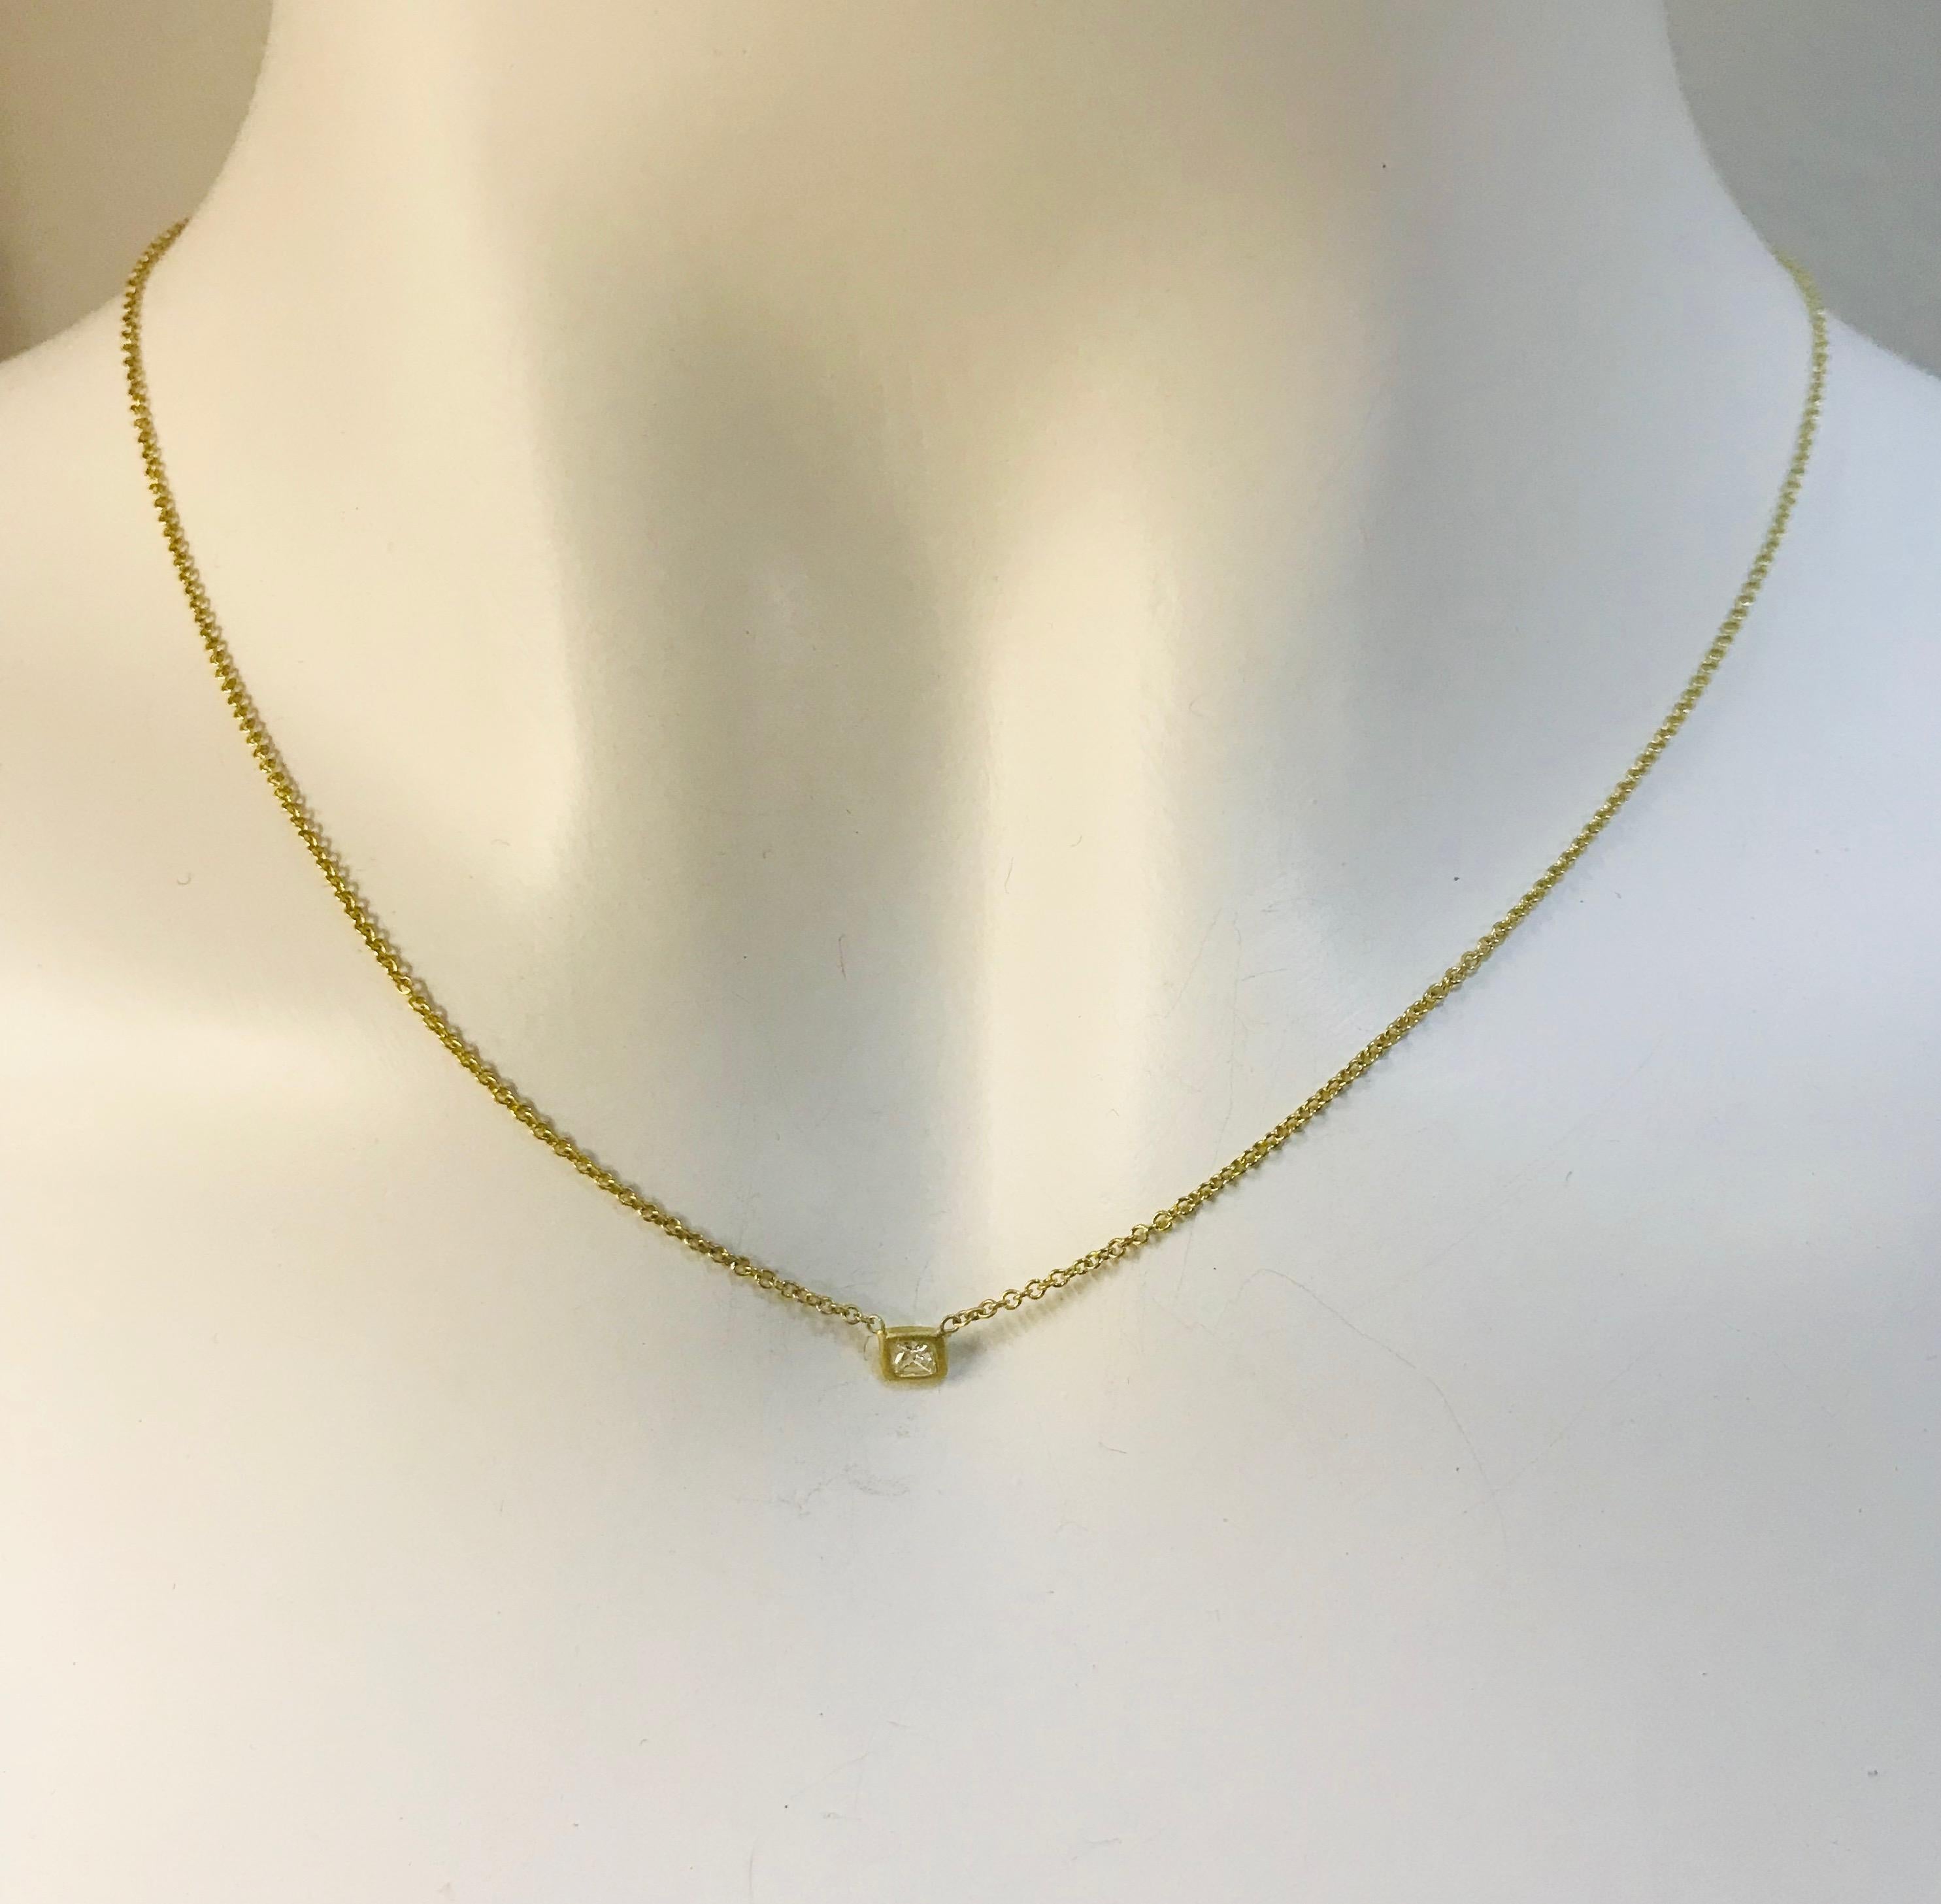 Faye Kim 18k Gold Prinzessinnenschliff Diamant Solitär Halskette

Es ist die perfekte Halskette für einen besonderen Geburtstag, ein Jubiläum, einen Abschluss oder ein anderes denkwürdiges Ereignis.   Fassung aus 18 Karat Gold,  die matte Oberfläche